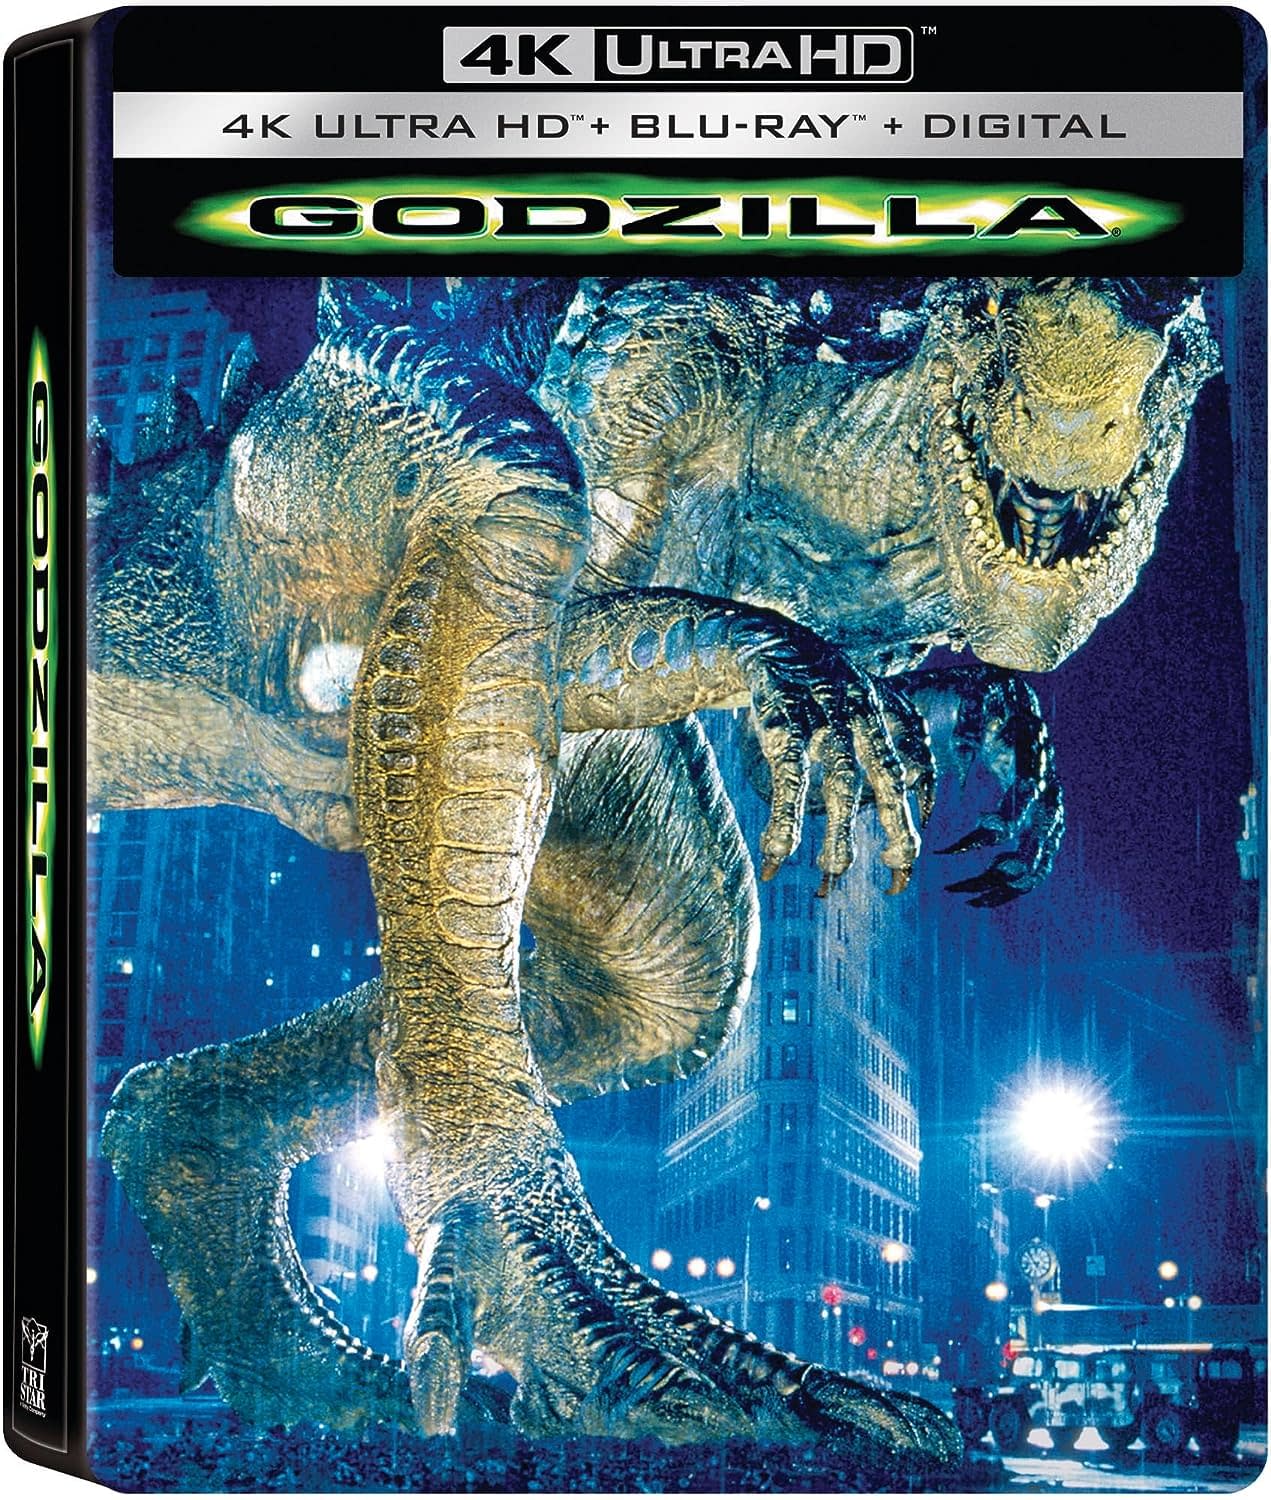 Godzilla 1998 Getting a 4K Steelbook Release In October